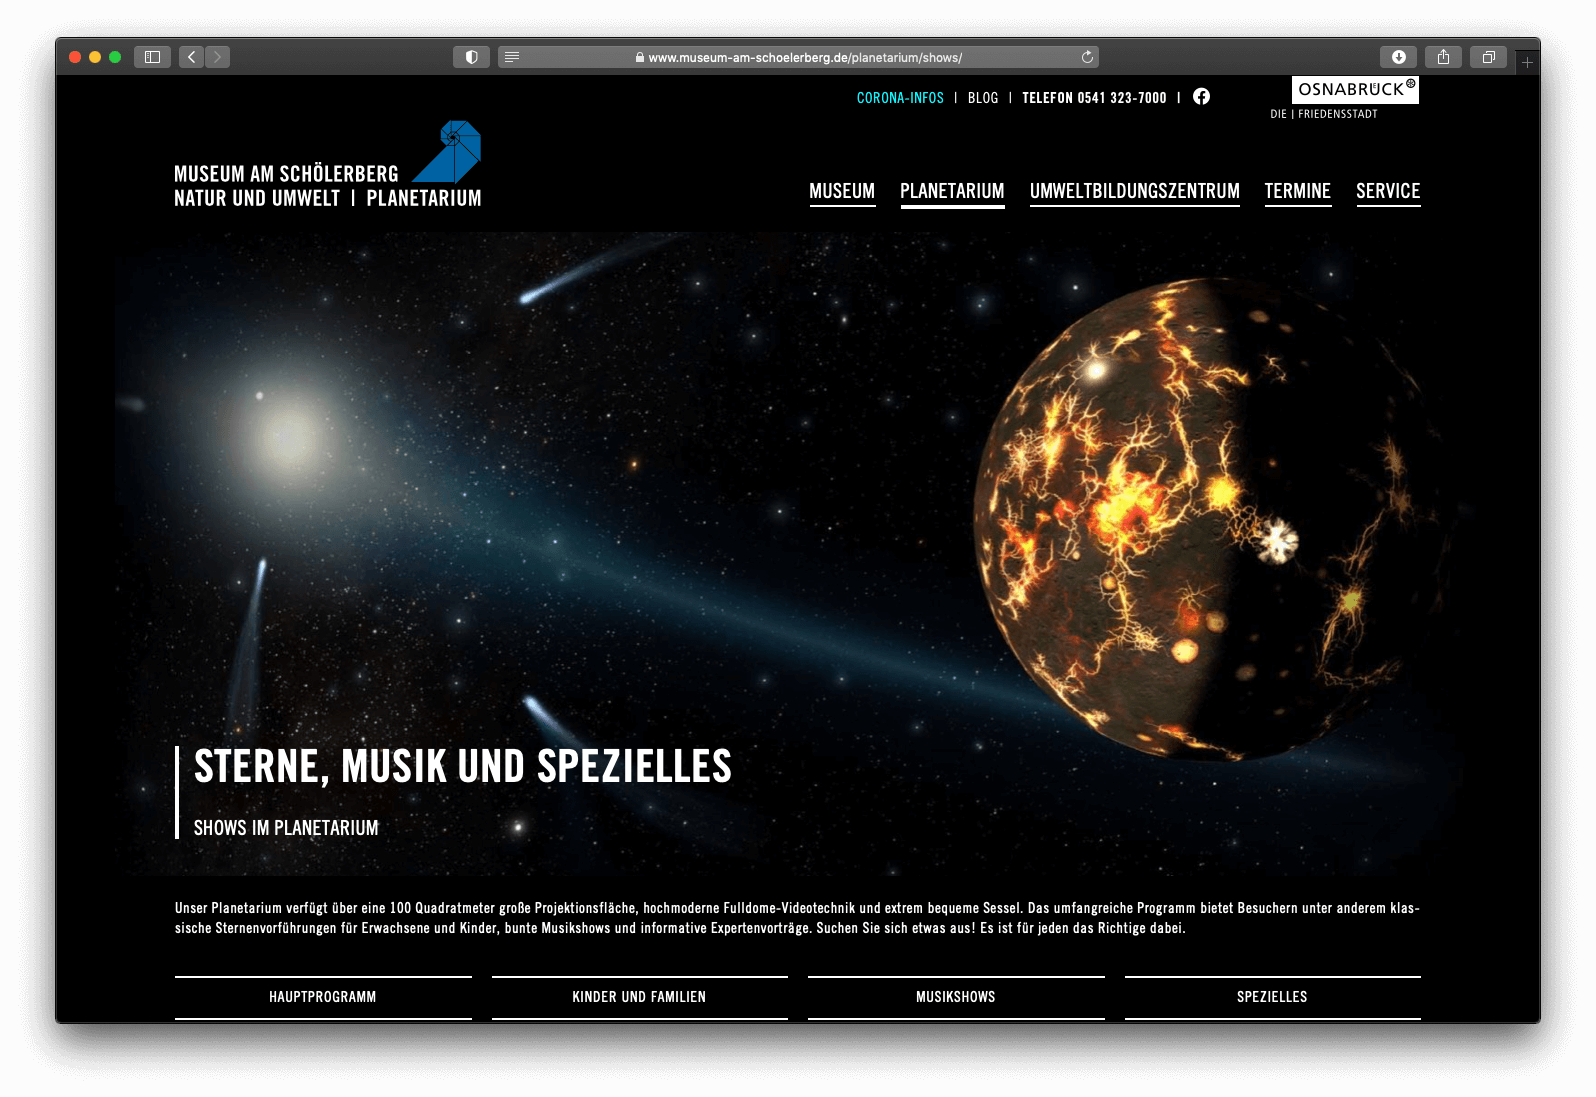 Das Planetarium ist ein Teil der neuen WordPress Webseite für ein Museum:Dem Museum am Schölerberg Osnabrück